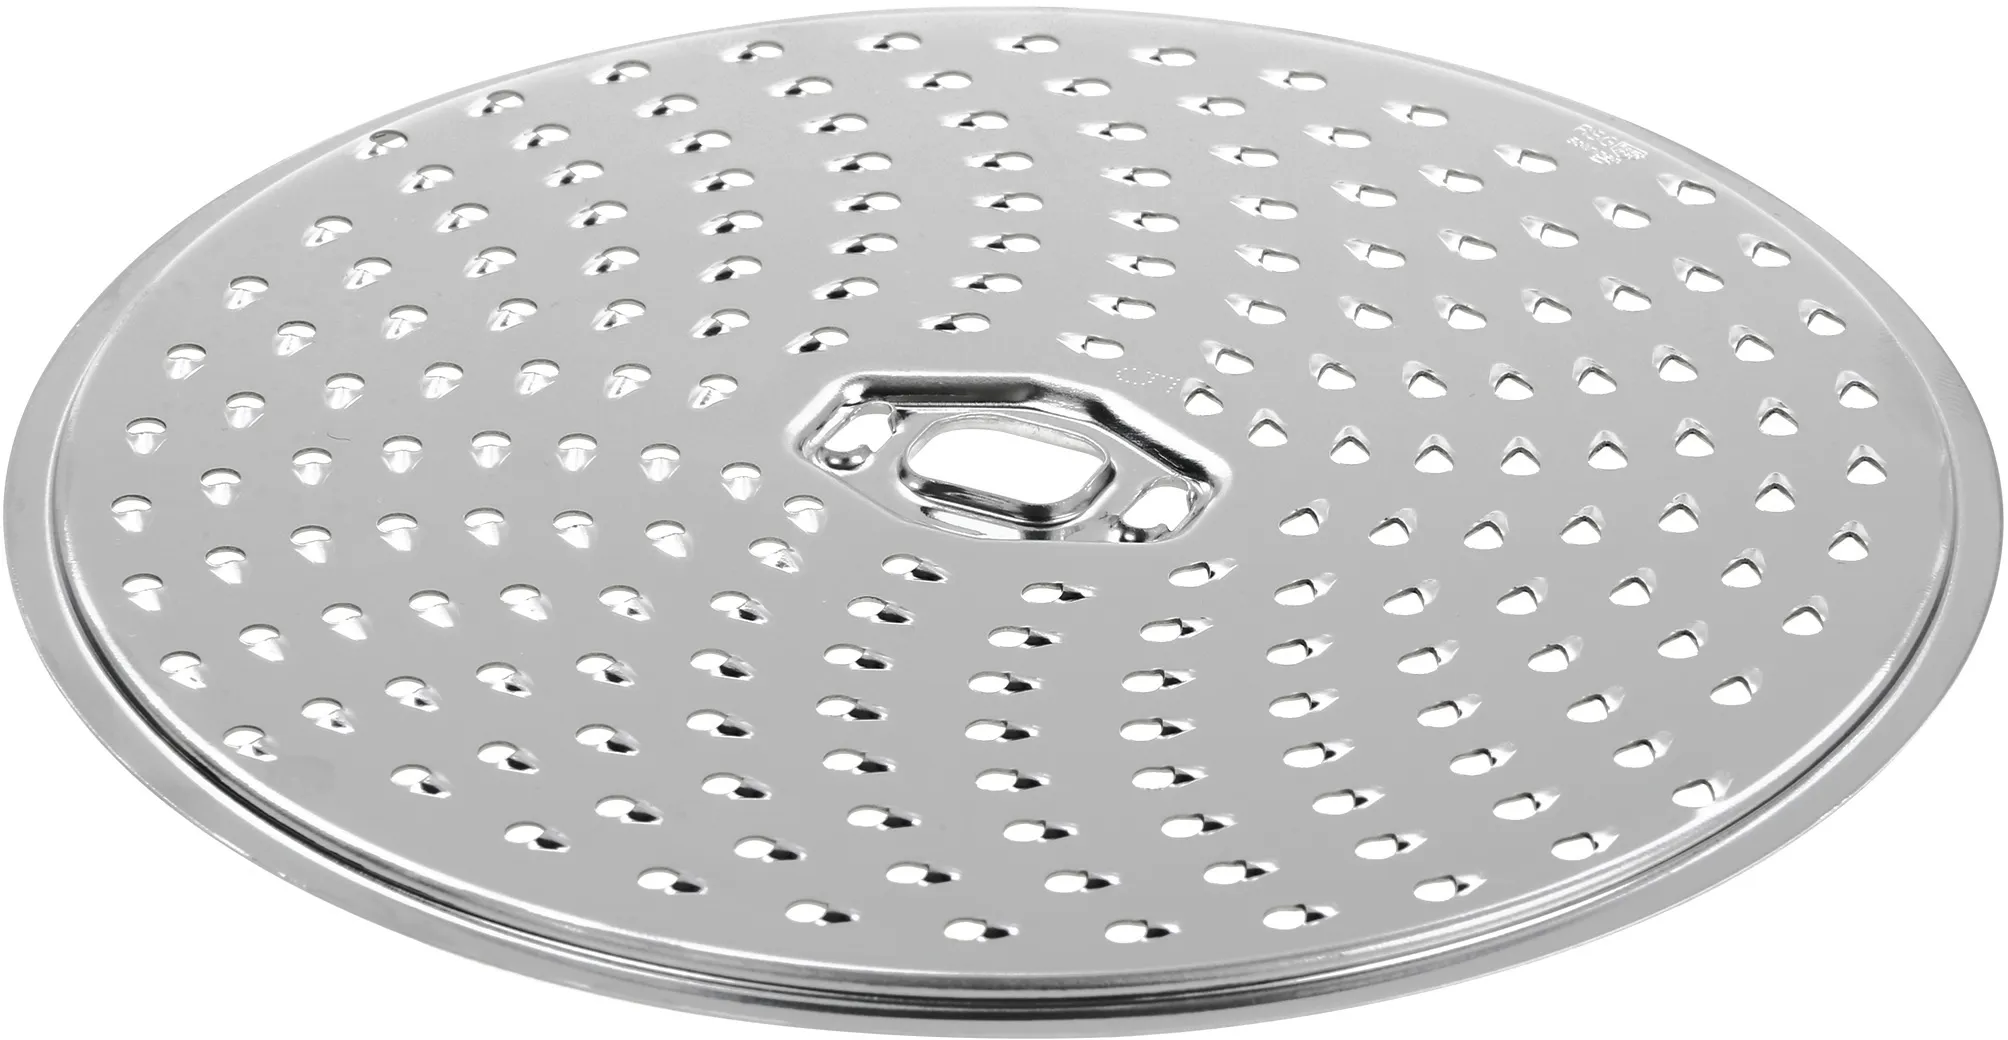 Mittelfeine Reibscheibe für Küchenmaschinen Reibscheibe mittelfein Durchmesser 160mm 